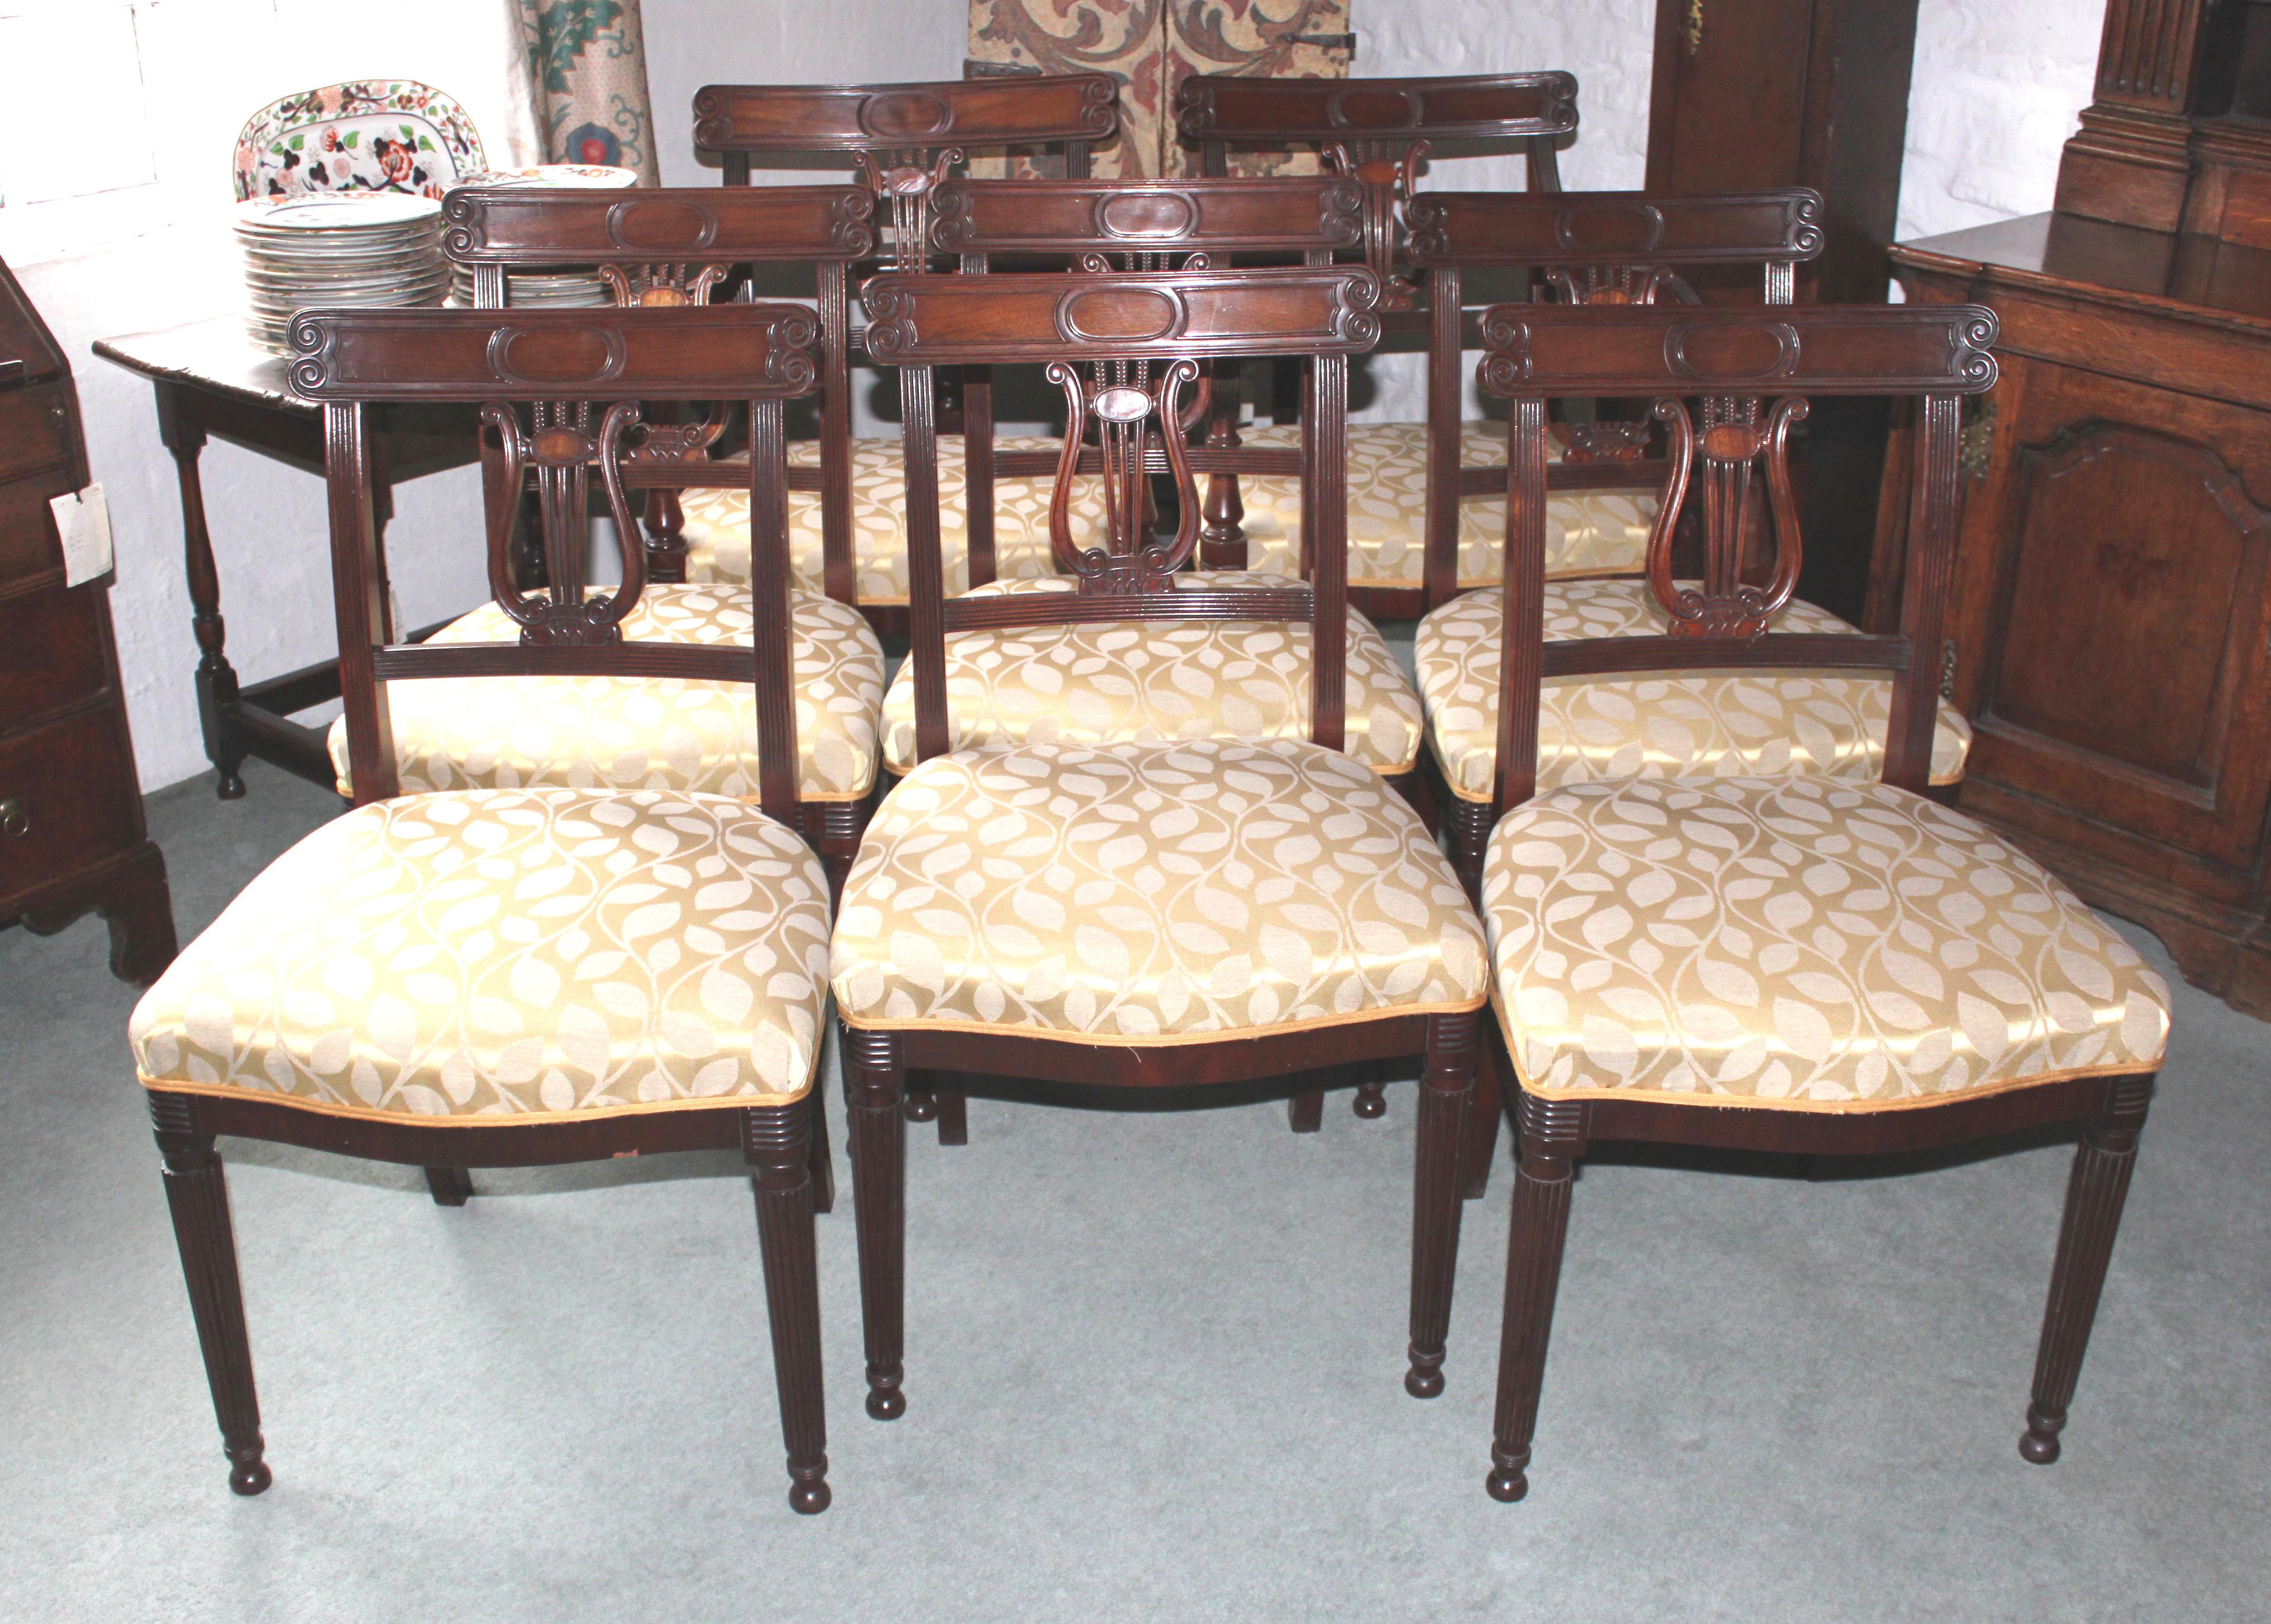 Un bel ensemble de 8 chaises de salle à manger Regency en acajou avec un dossier en forme de lyre et des pieds anglés ; bonne taille - probablement un peu plus tard dans la date que leur conception suggère

Les deux fauteuils sont un peu plus